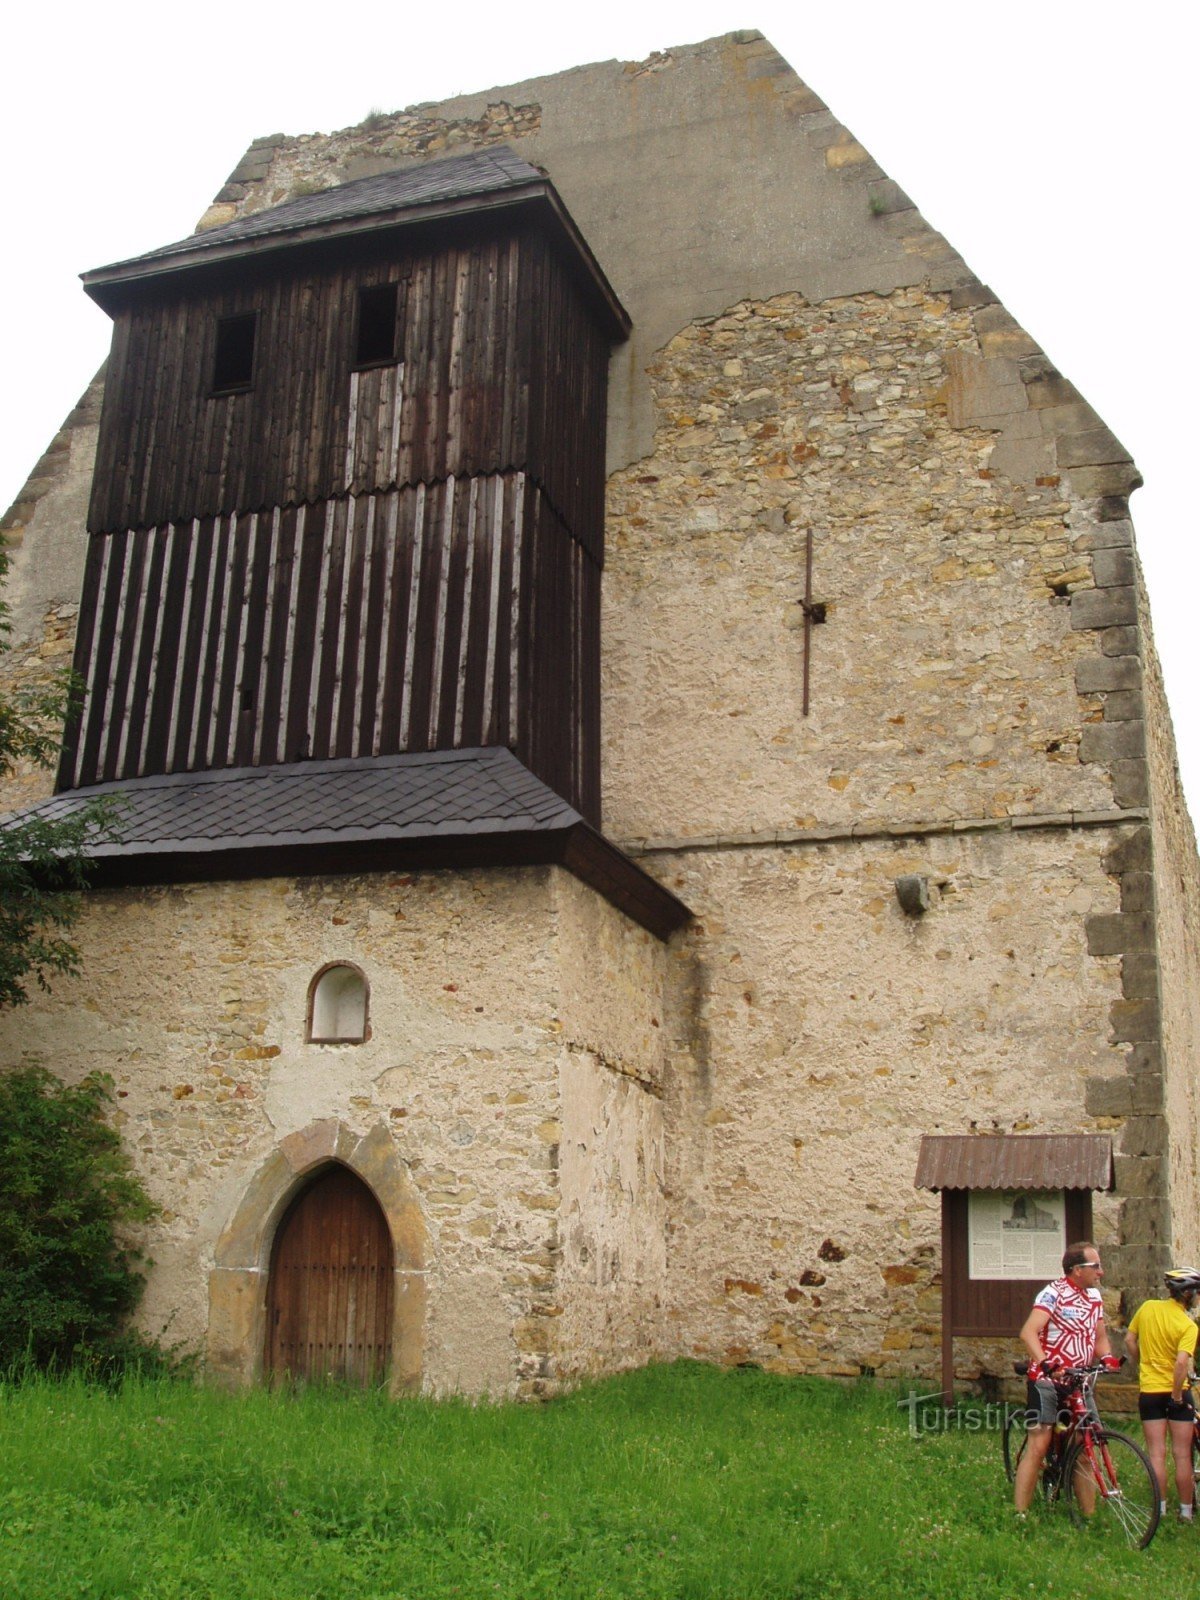 Rester av en klosterkyrka med klockstapel